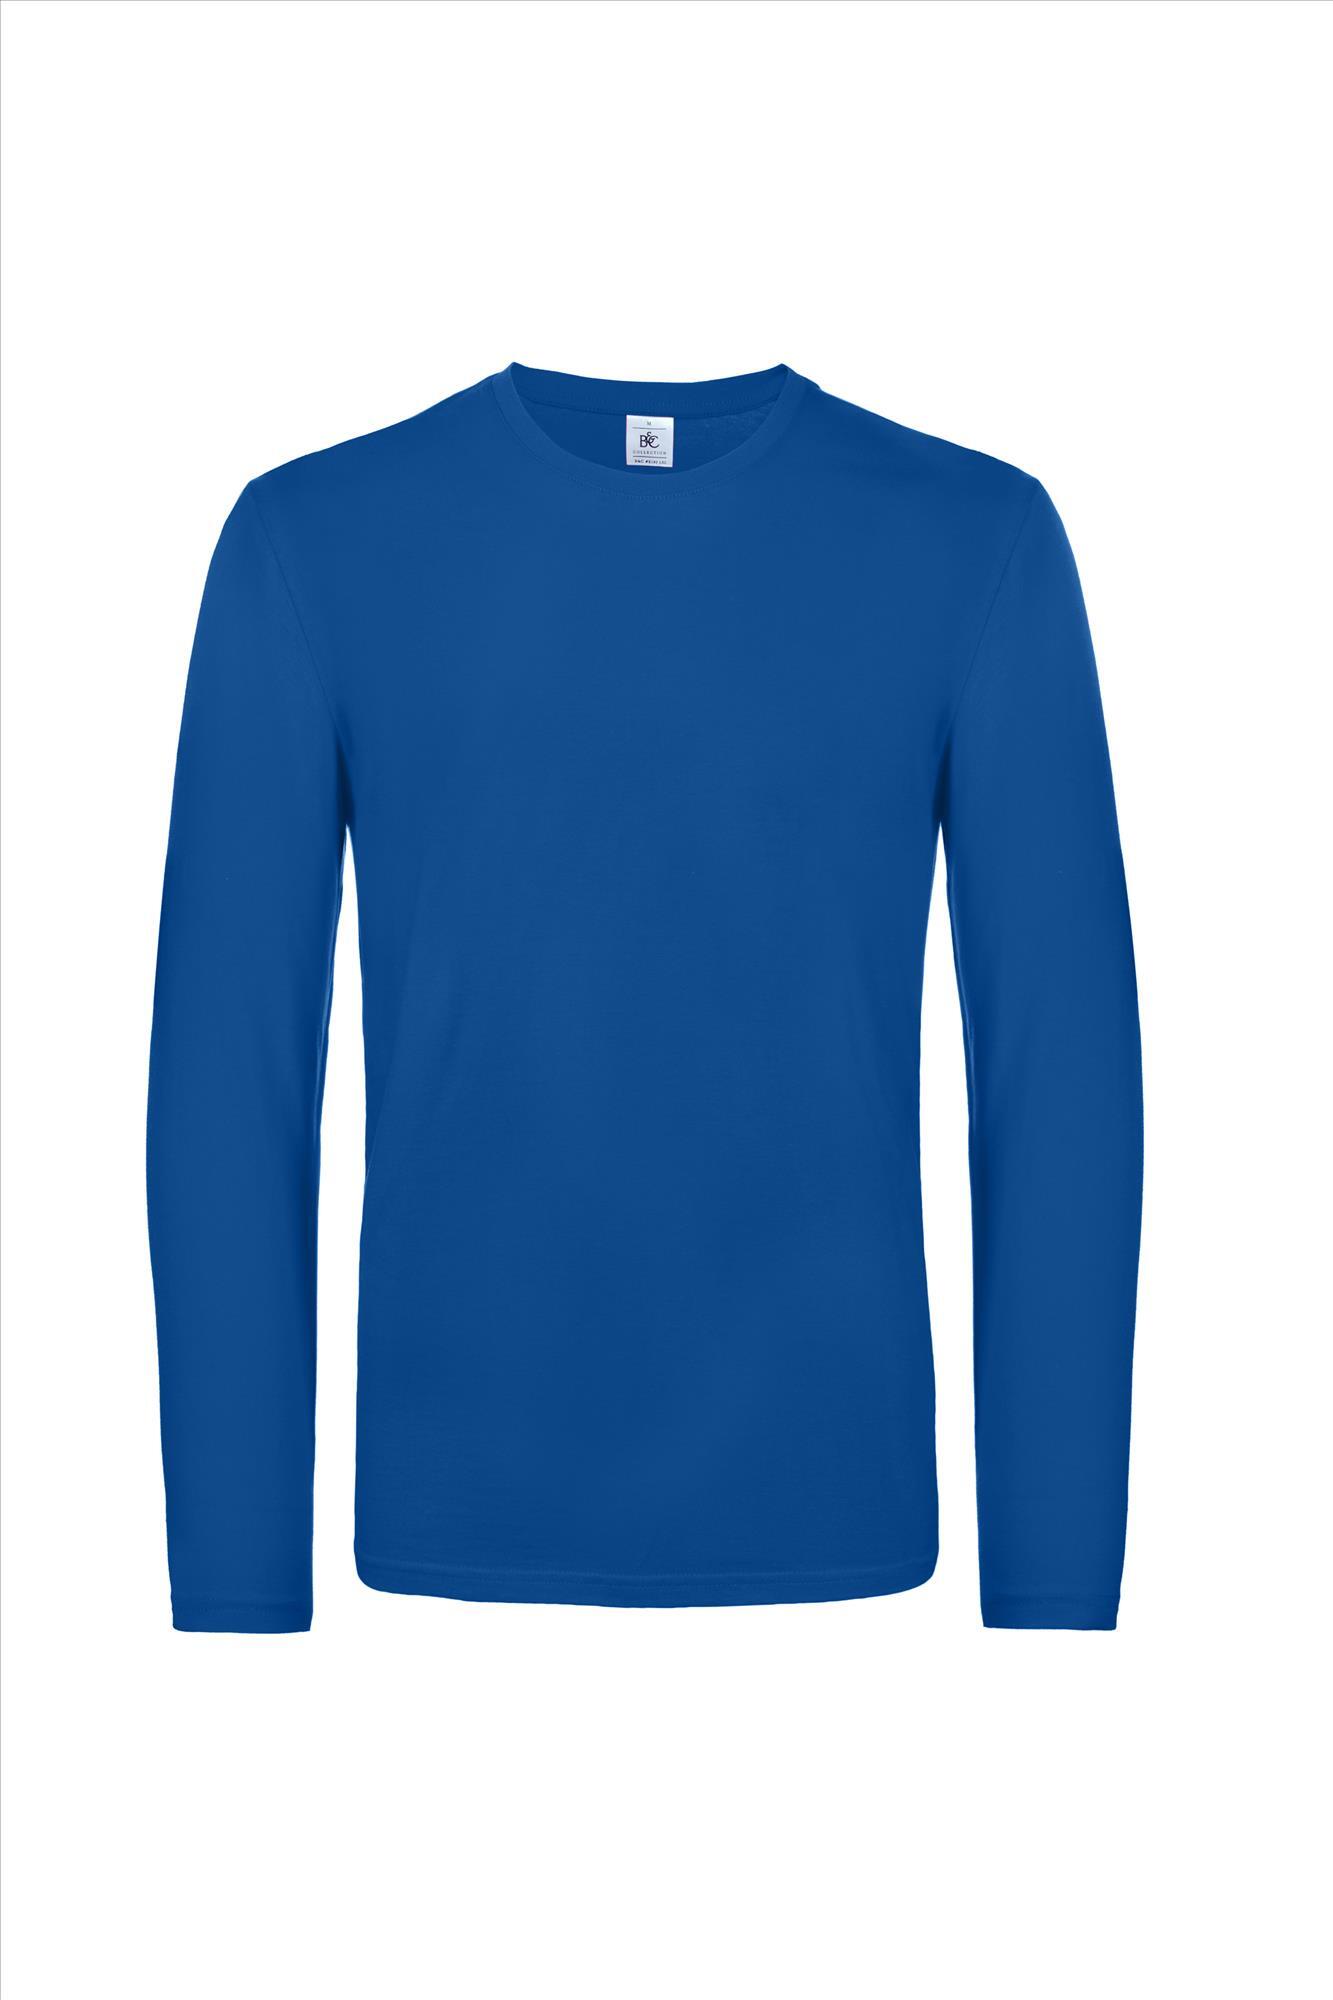 Modern zware kwaliteit heren T-shirt met lange mouwen royal blauw te personaliseren